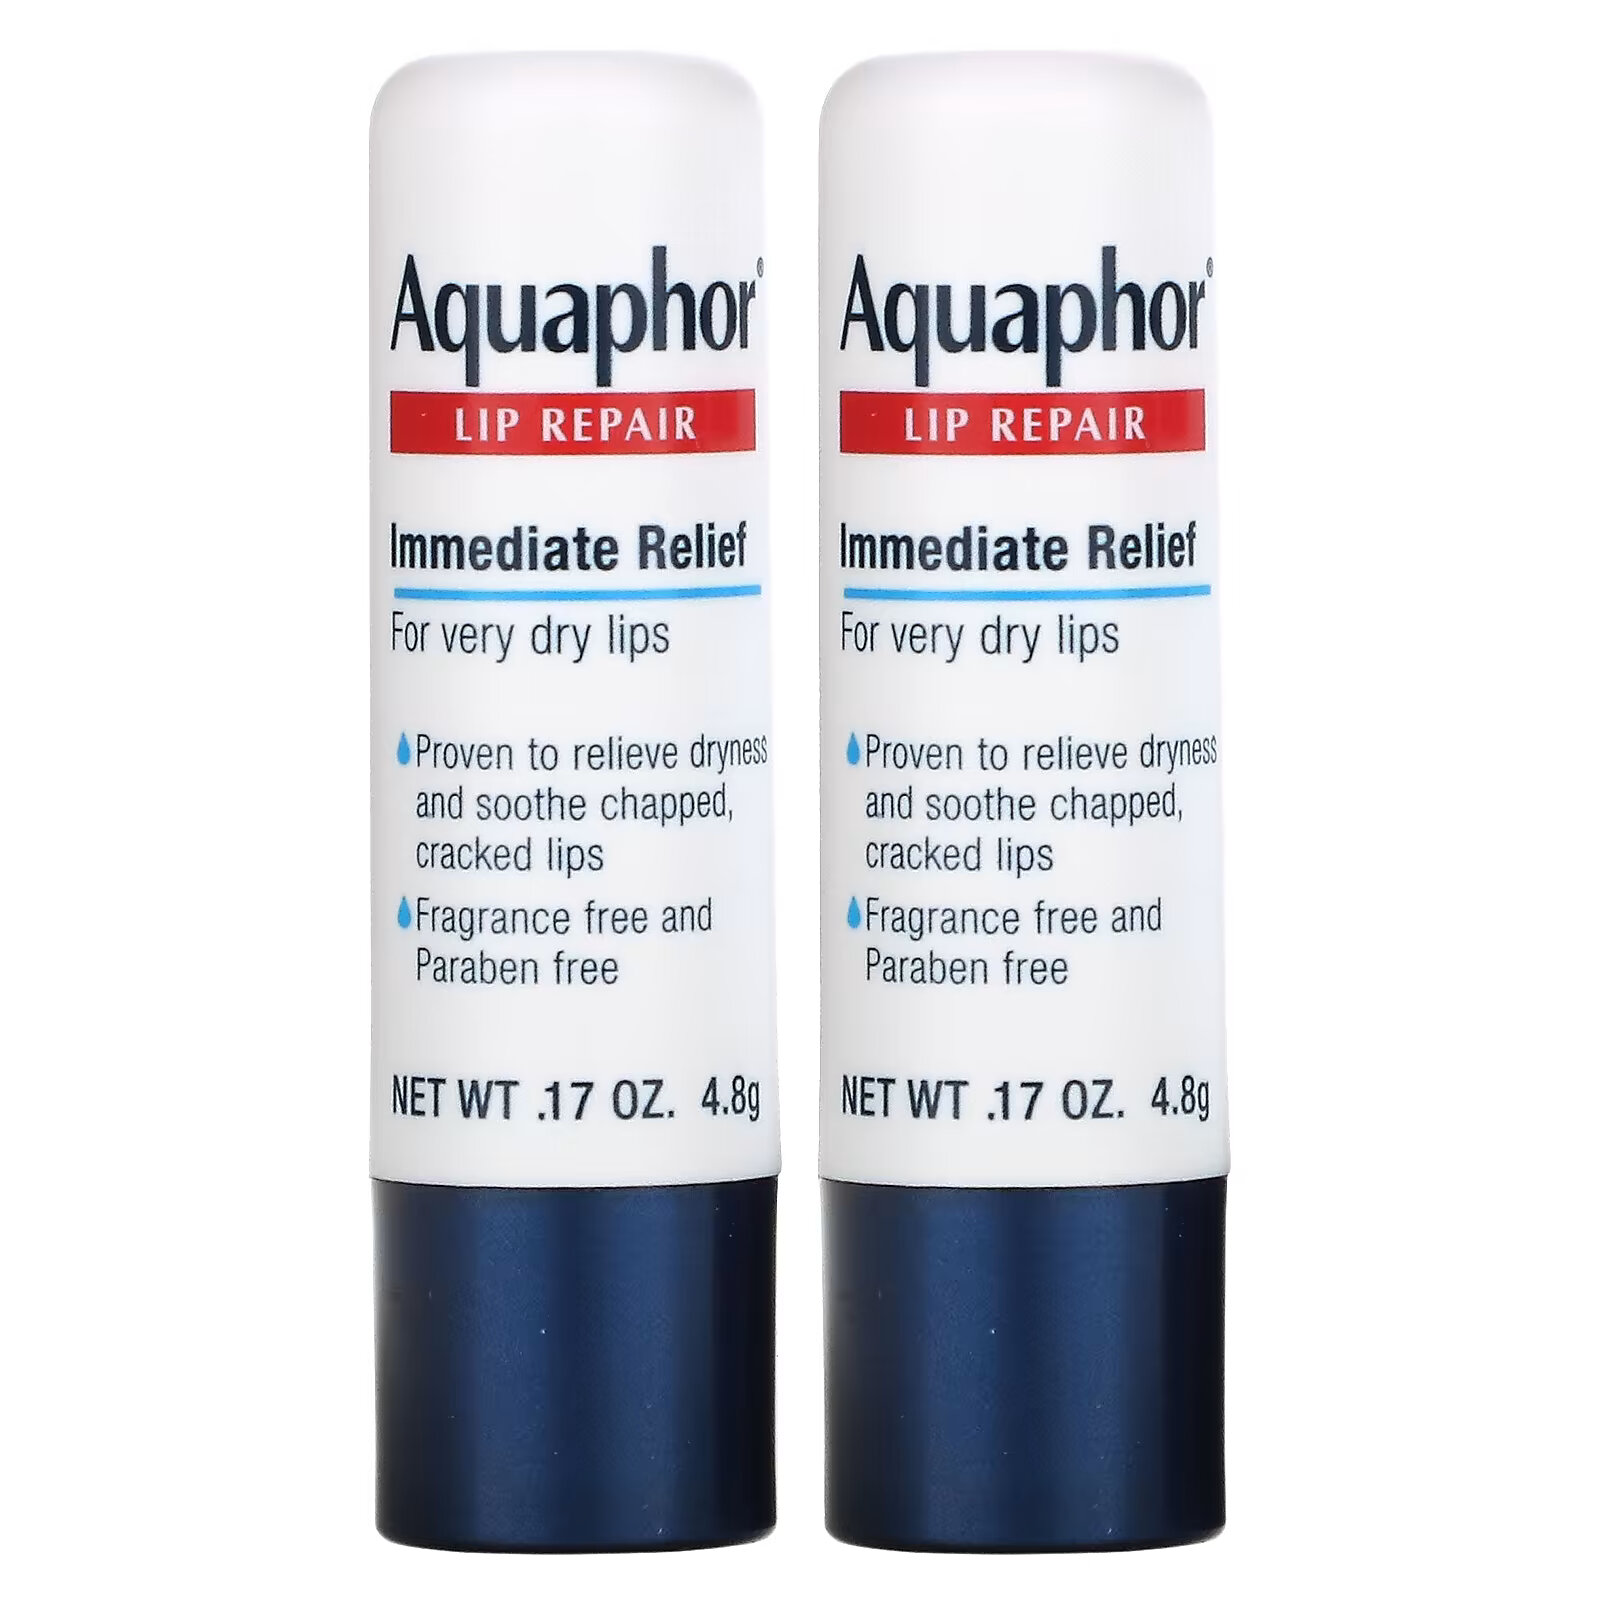 Aquaphor, Lip Repair Stick, Немедленное облегчение, 2 палочки, 0,17 унции (4,8 г) aquaphor lip repair stick немедленное облегчение 2 палочки 0 17 унции 4 8 г